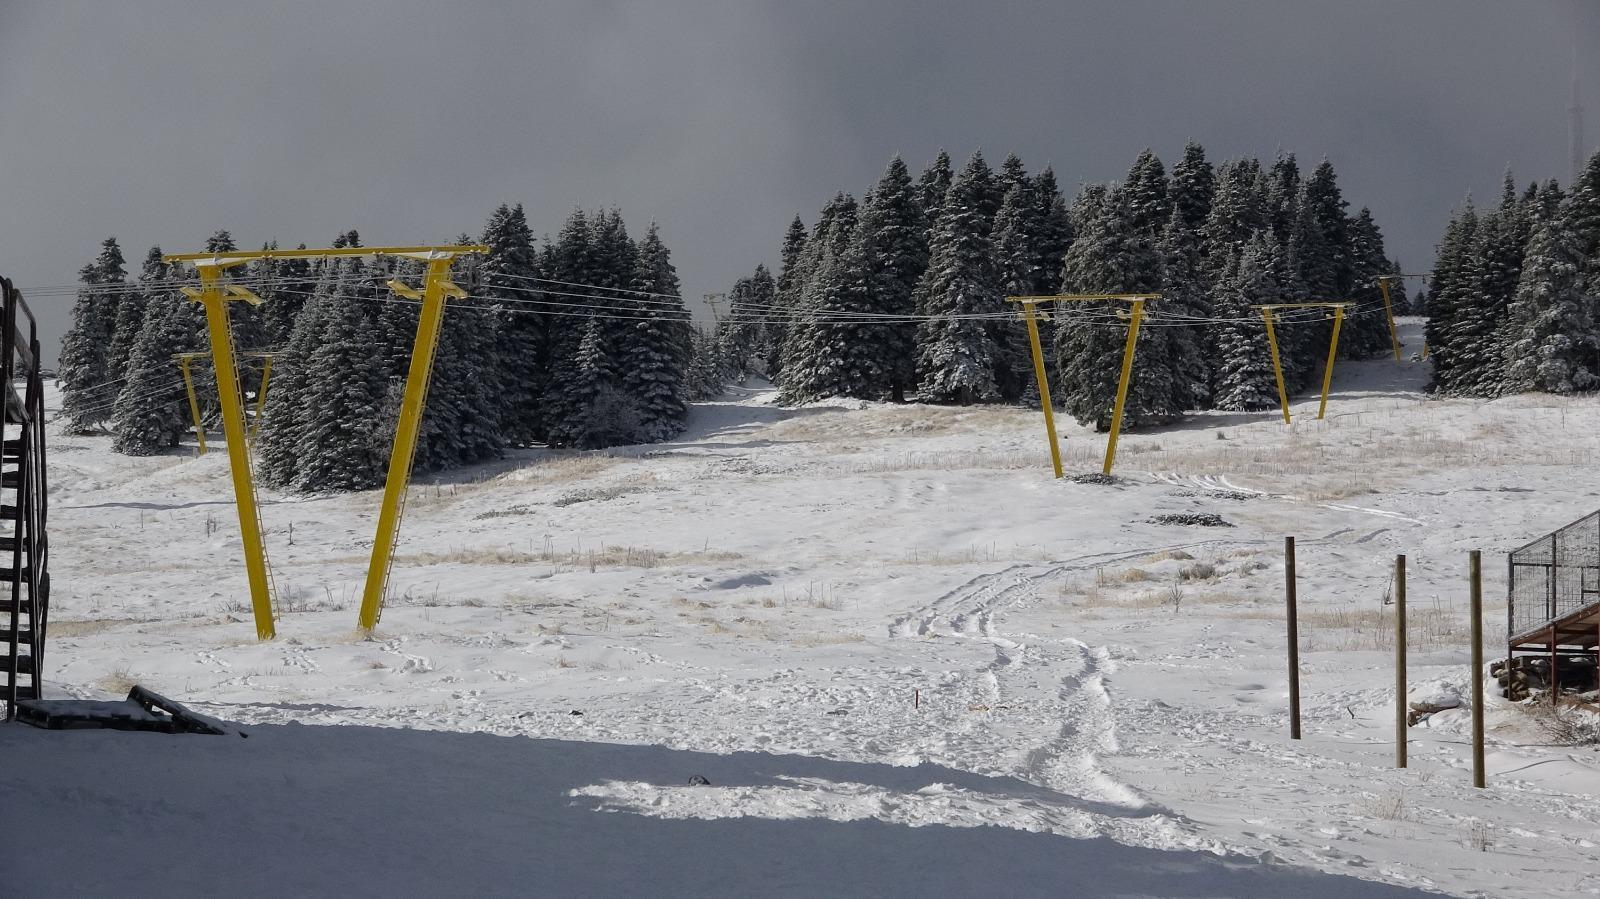 Uludağ'da kayak sezonu ne zaman açılacak? 2021 kayak takımı fiyatları ne  kadar? - Seyahat Haberleri